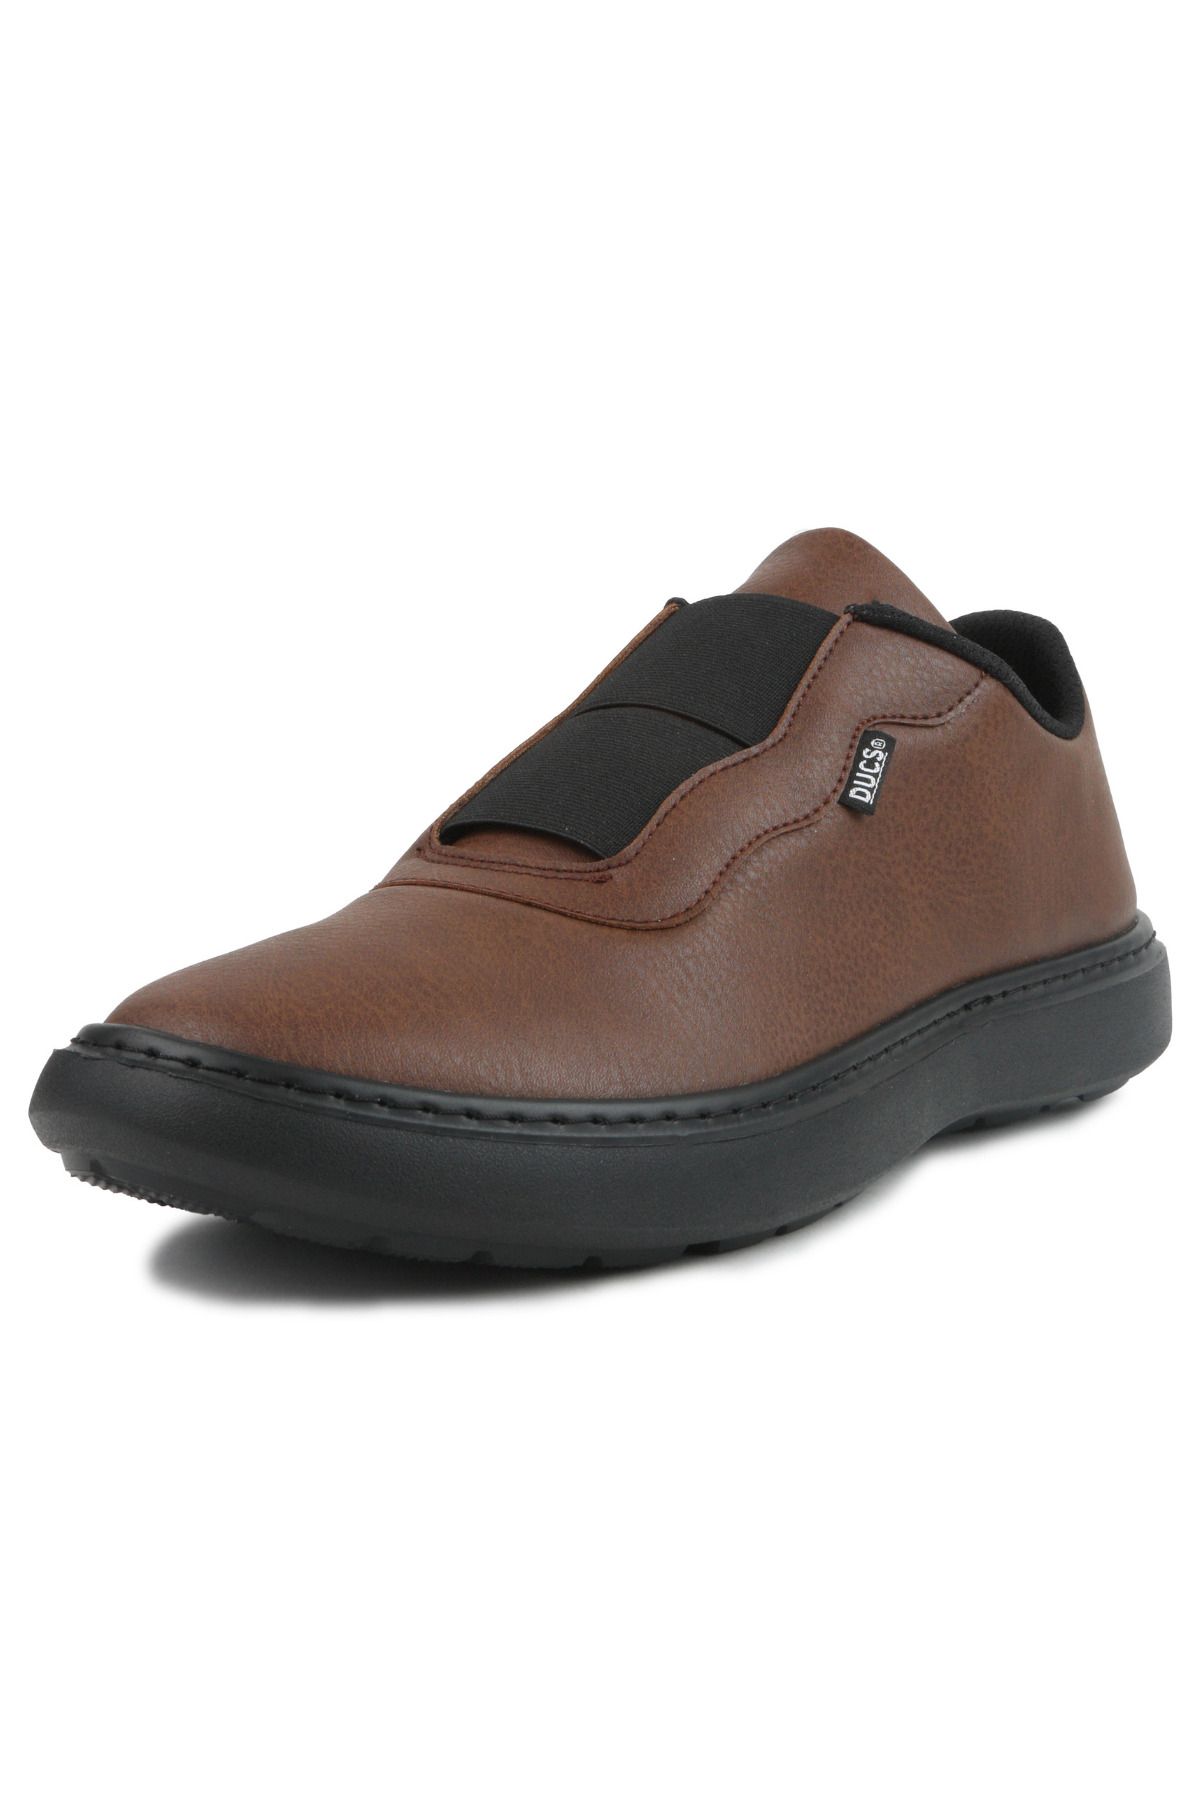 DUCS Ultra Hafif Sneaker Rahat Loafer Ayakkabı Esnek Yürüyüş Ayakkabısı Unisex Casual Ayakkabı Taba